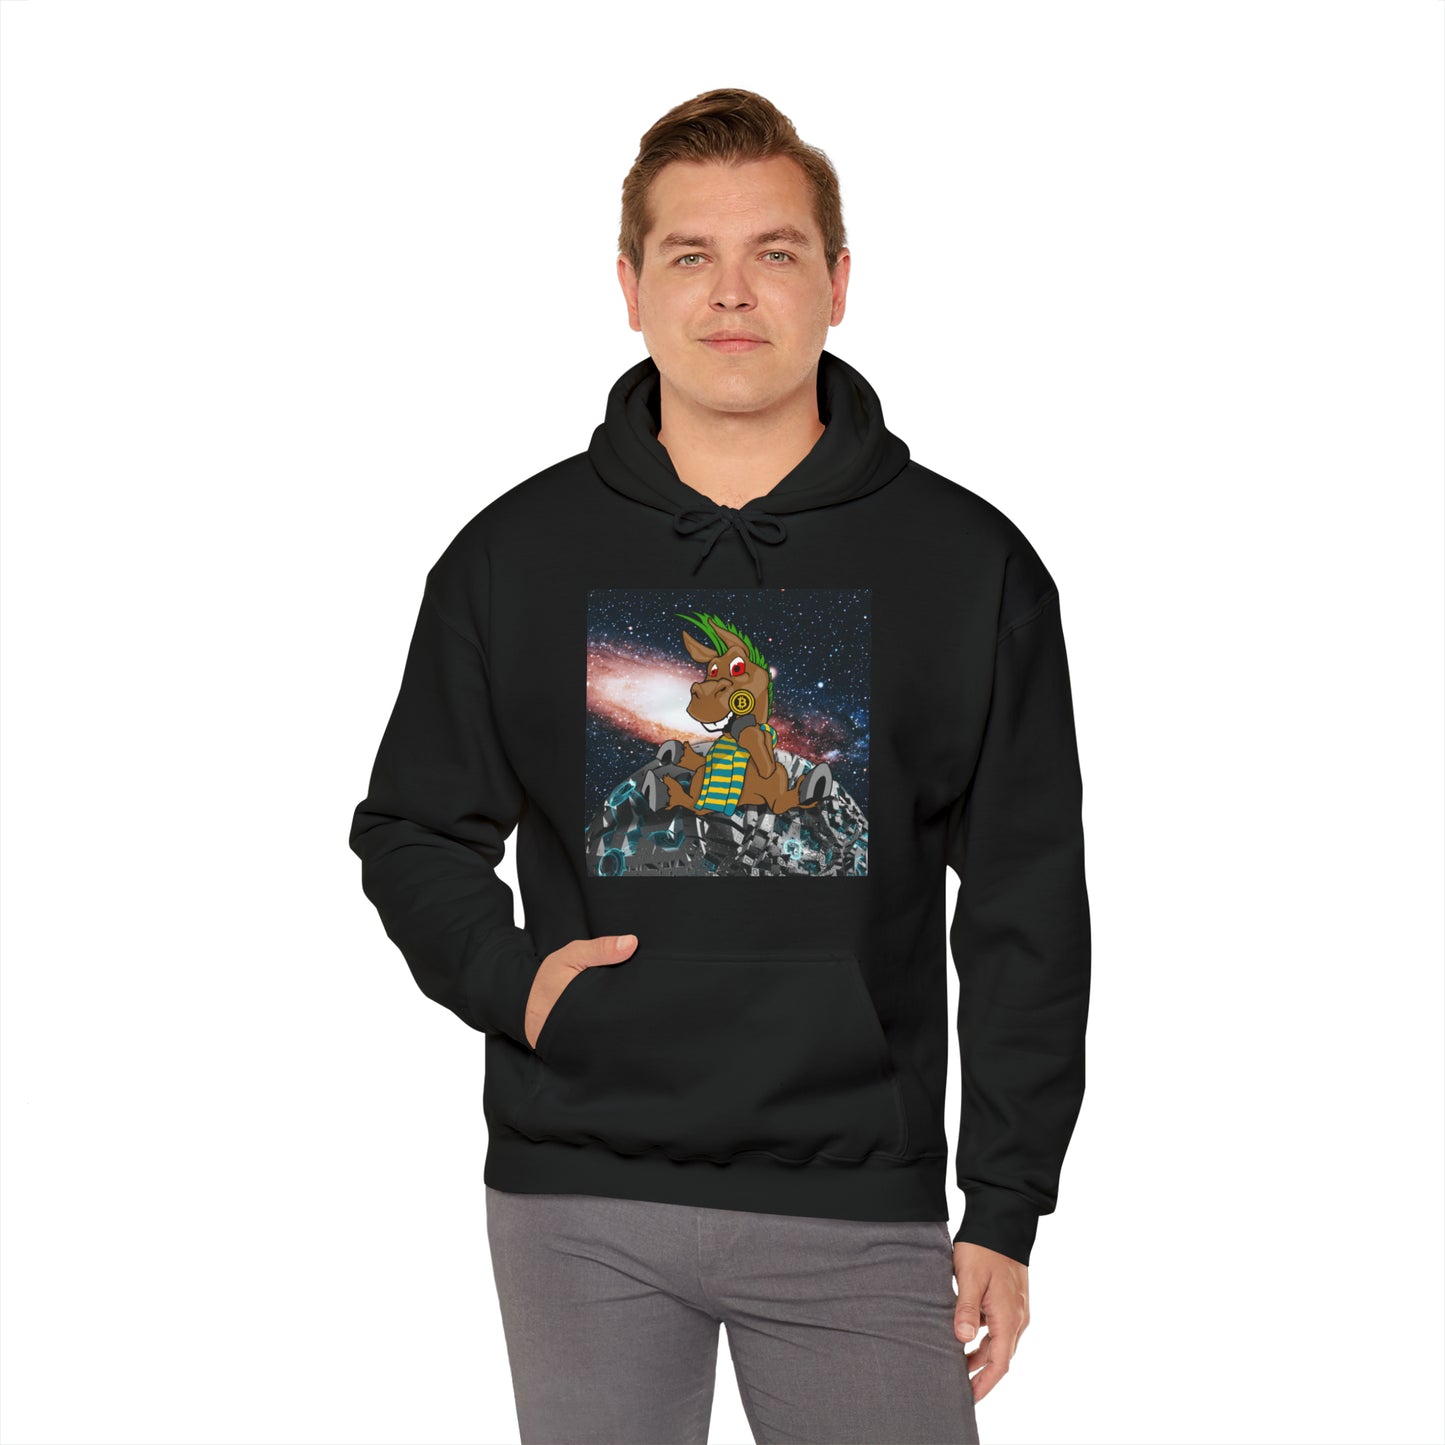 DeFi Space Donkeys #29 Unisex Heavy Blend™ Hooded Sweatshirt